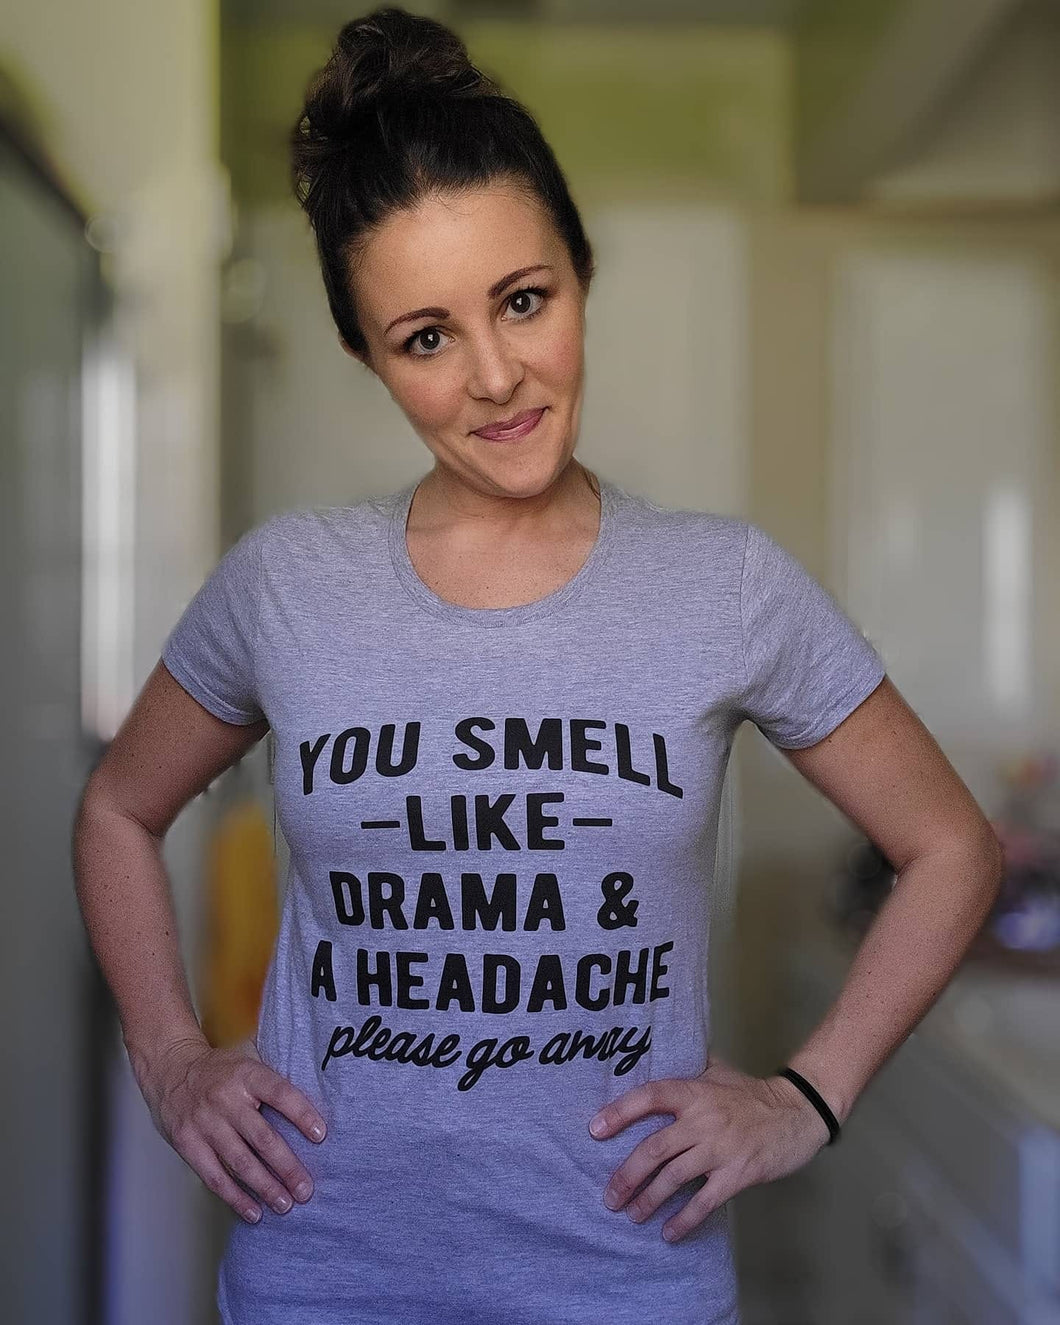 You smell like drama & a headache t-shirt